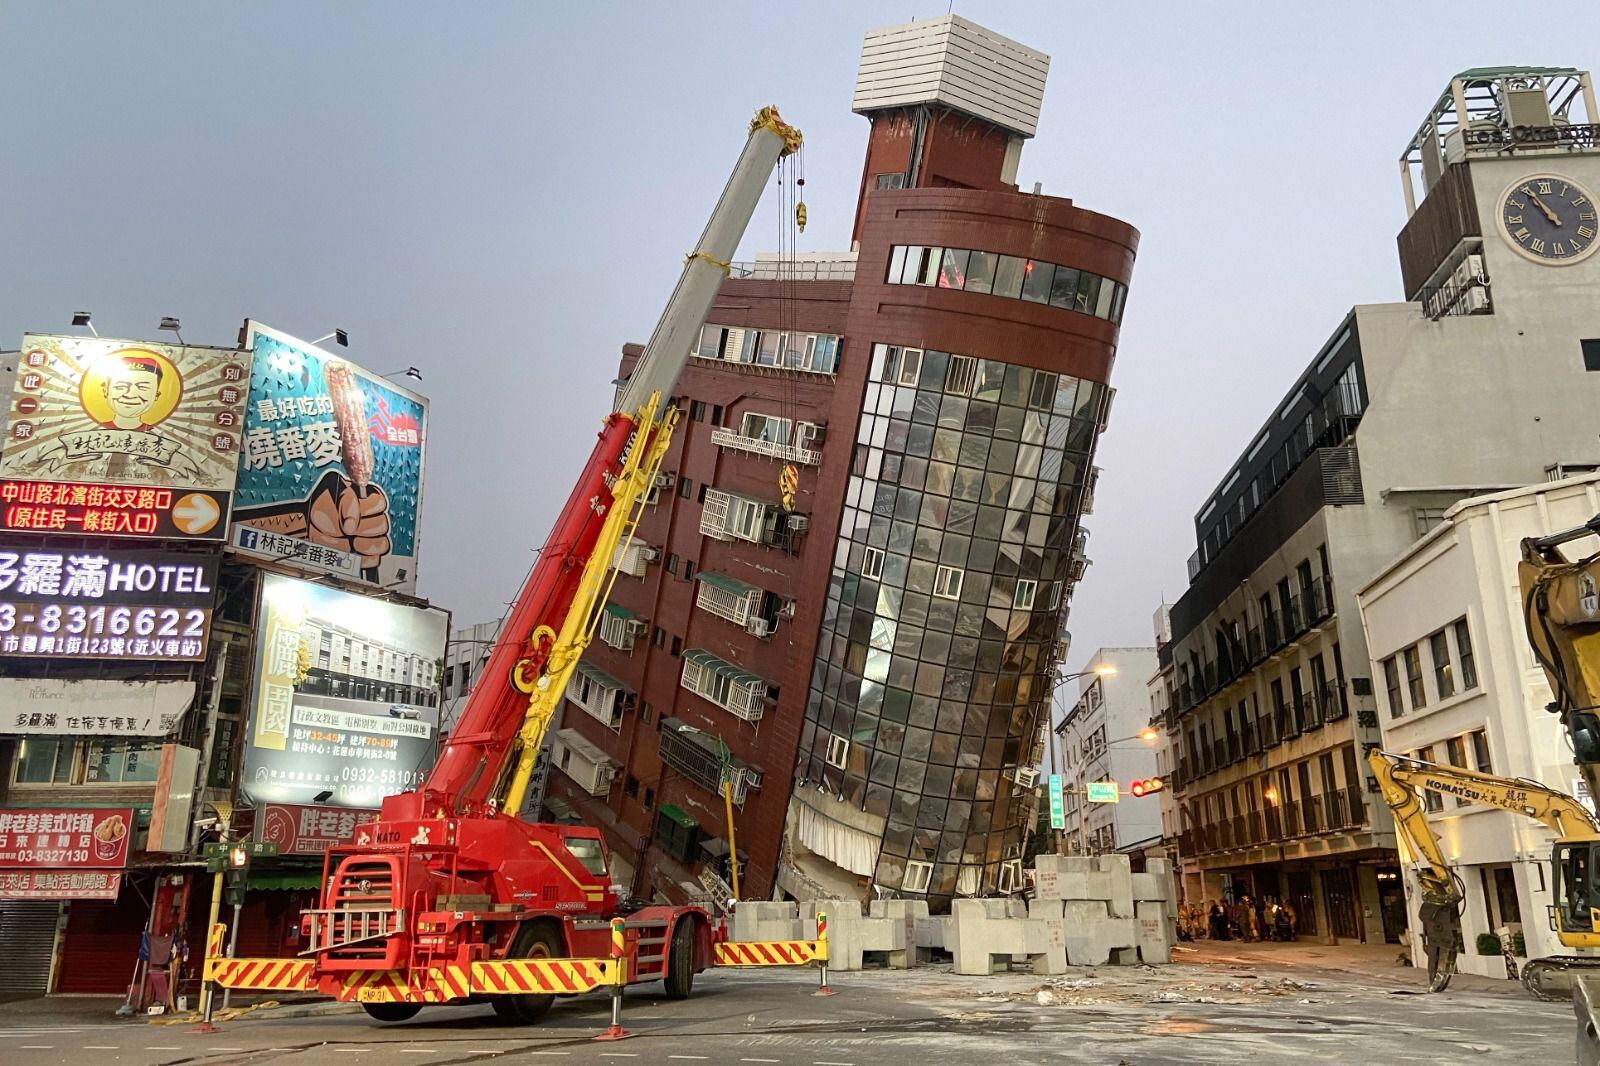 Edificios inclinados apunto de derrumbarse tras terremoto de magnitud 7.4 en Taiwán y equipos de rescate trabajan a toda velocidad